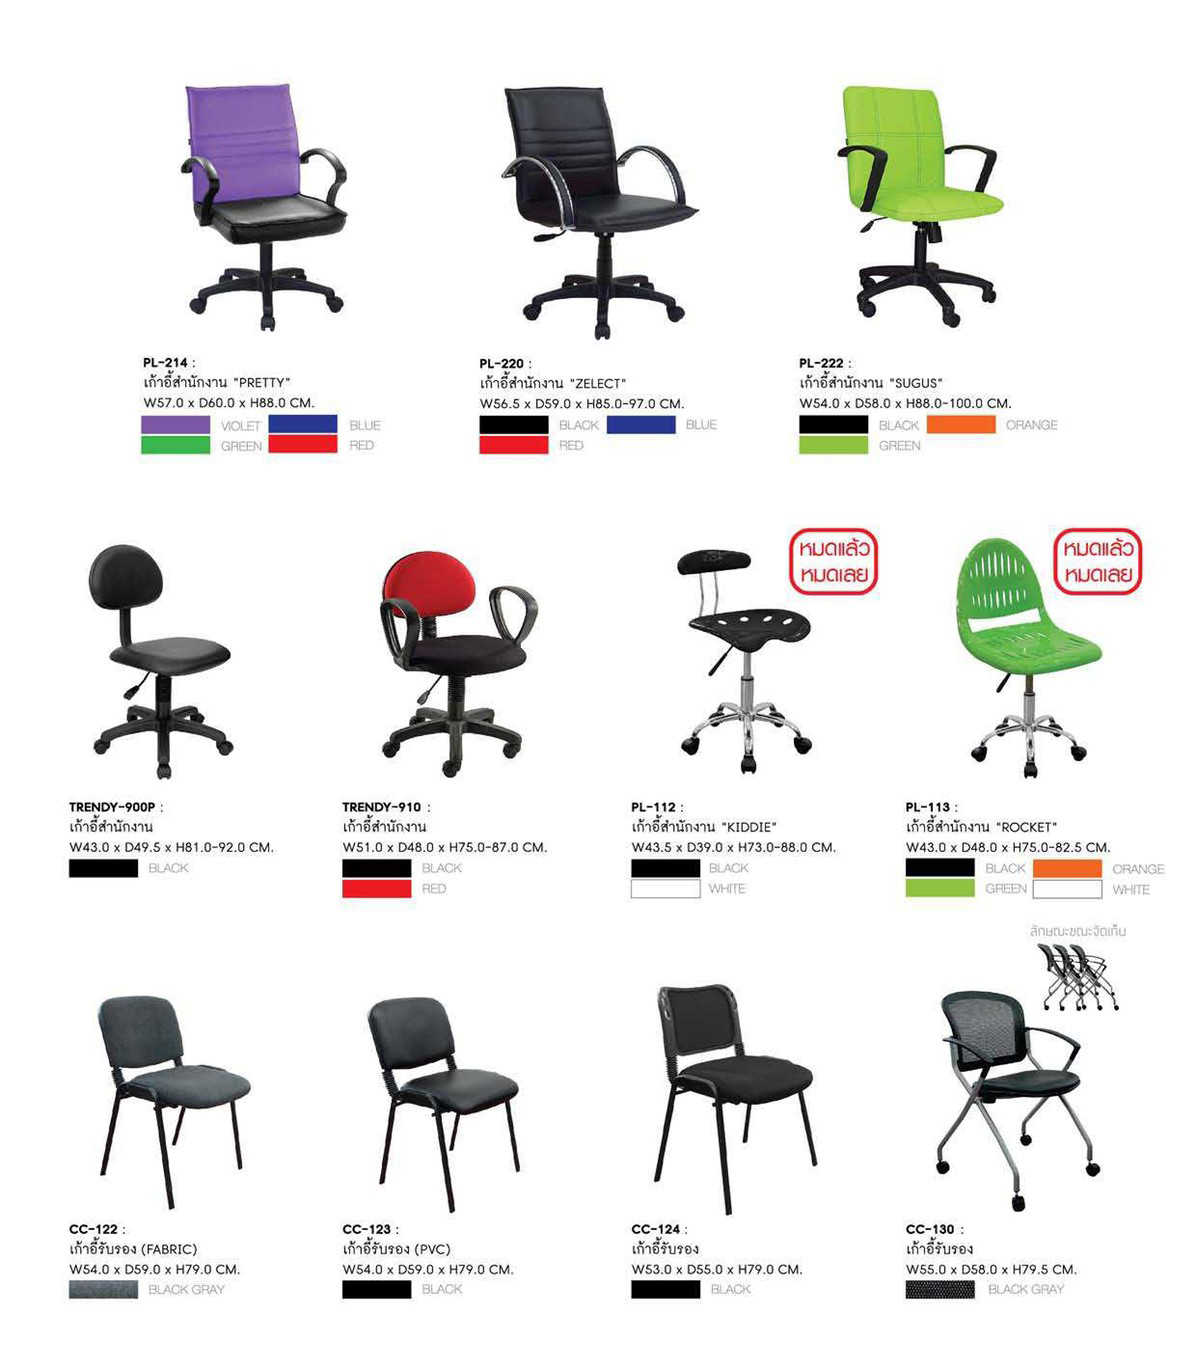 83077::PL-214::เก้าอี้สำนักงาน PRETTY ก580xล620xส900 มม. สีน้ำเงิน,เขียว,ม่วง,แดง (หลังสปริง) เก้าอี้สำนักงาน SURE